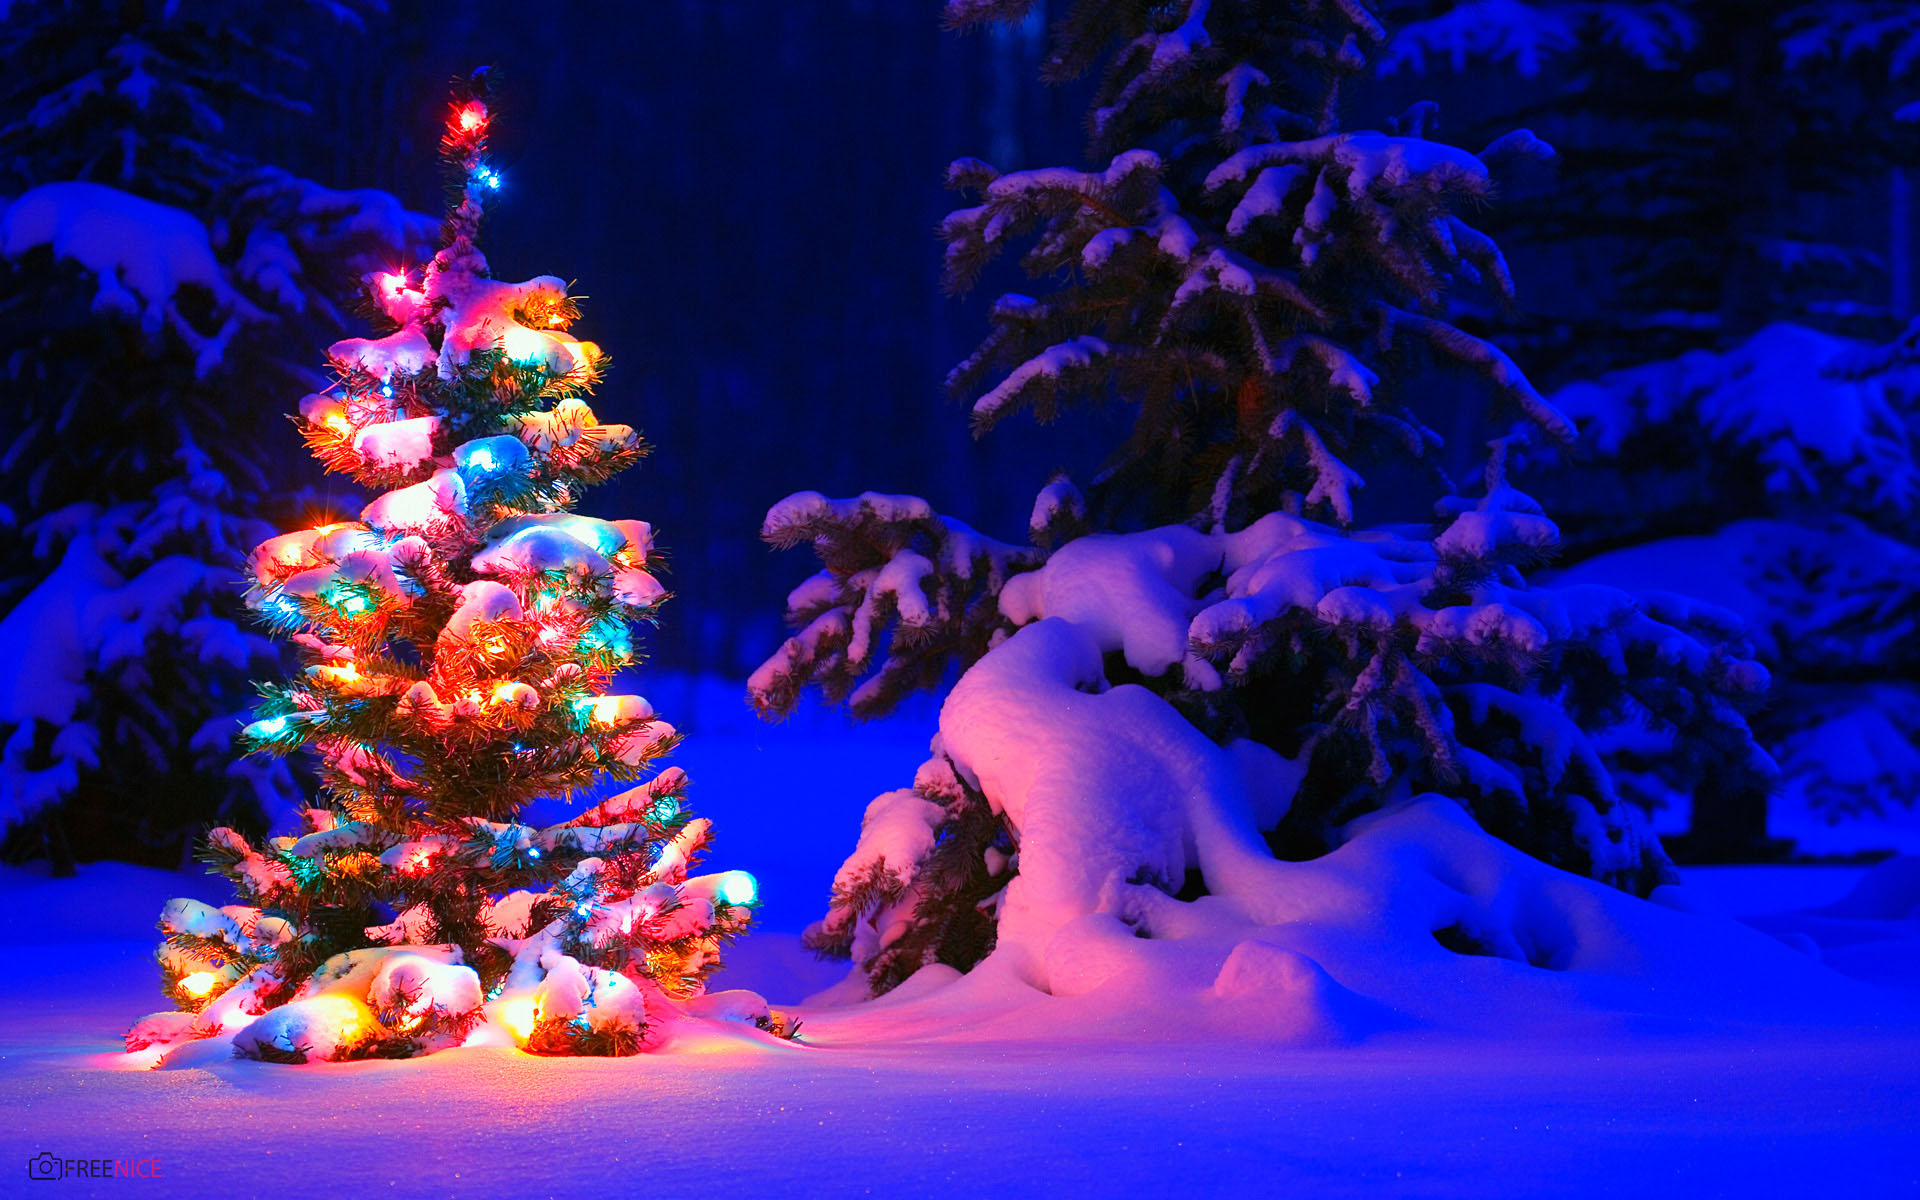 Hình ảnh cây thông Noel rực rỡ sáng tạo đang chờ đón bạn. Nếu bạn muốn ngắm nhìn những cây thông Noel lung linh, tuyệt đẹp với những màu sắc sặc sỡ, hãy đến địa điểm của chúng tôi và tận hưởng khoảnh khắc này.